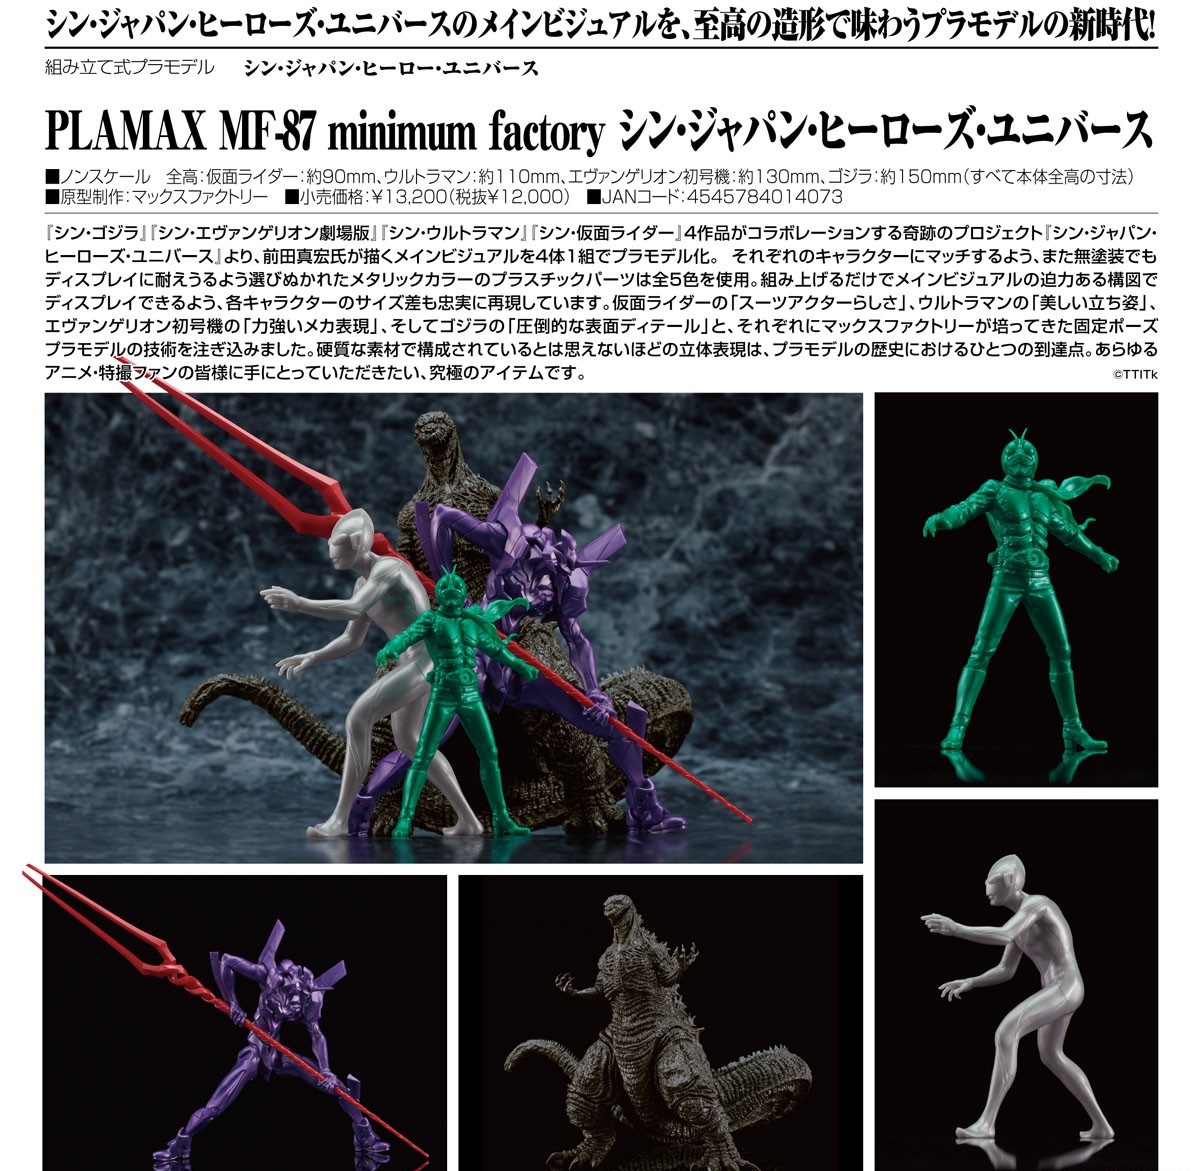 Plamax MF-87 Shin Japan Heroes ! De Shin Japan Heroes Universe viene un modelo de plástico de la imagen principal dibujada por Mahiro Maeda. 'Shin Japan Heroes Universe'. Set de figuras par armar! PREVENTA 130 USD SEPT2024. Fechas de salida estimadas! #PlamaxParaguay